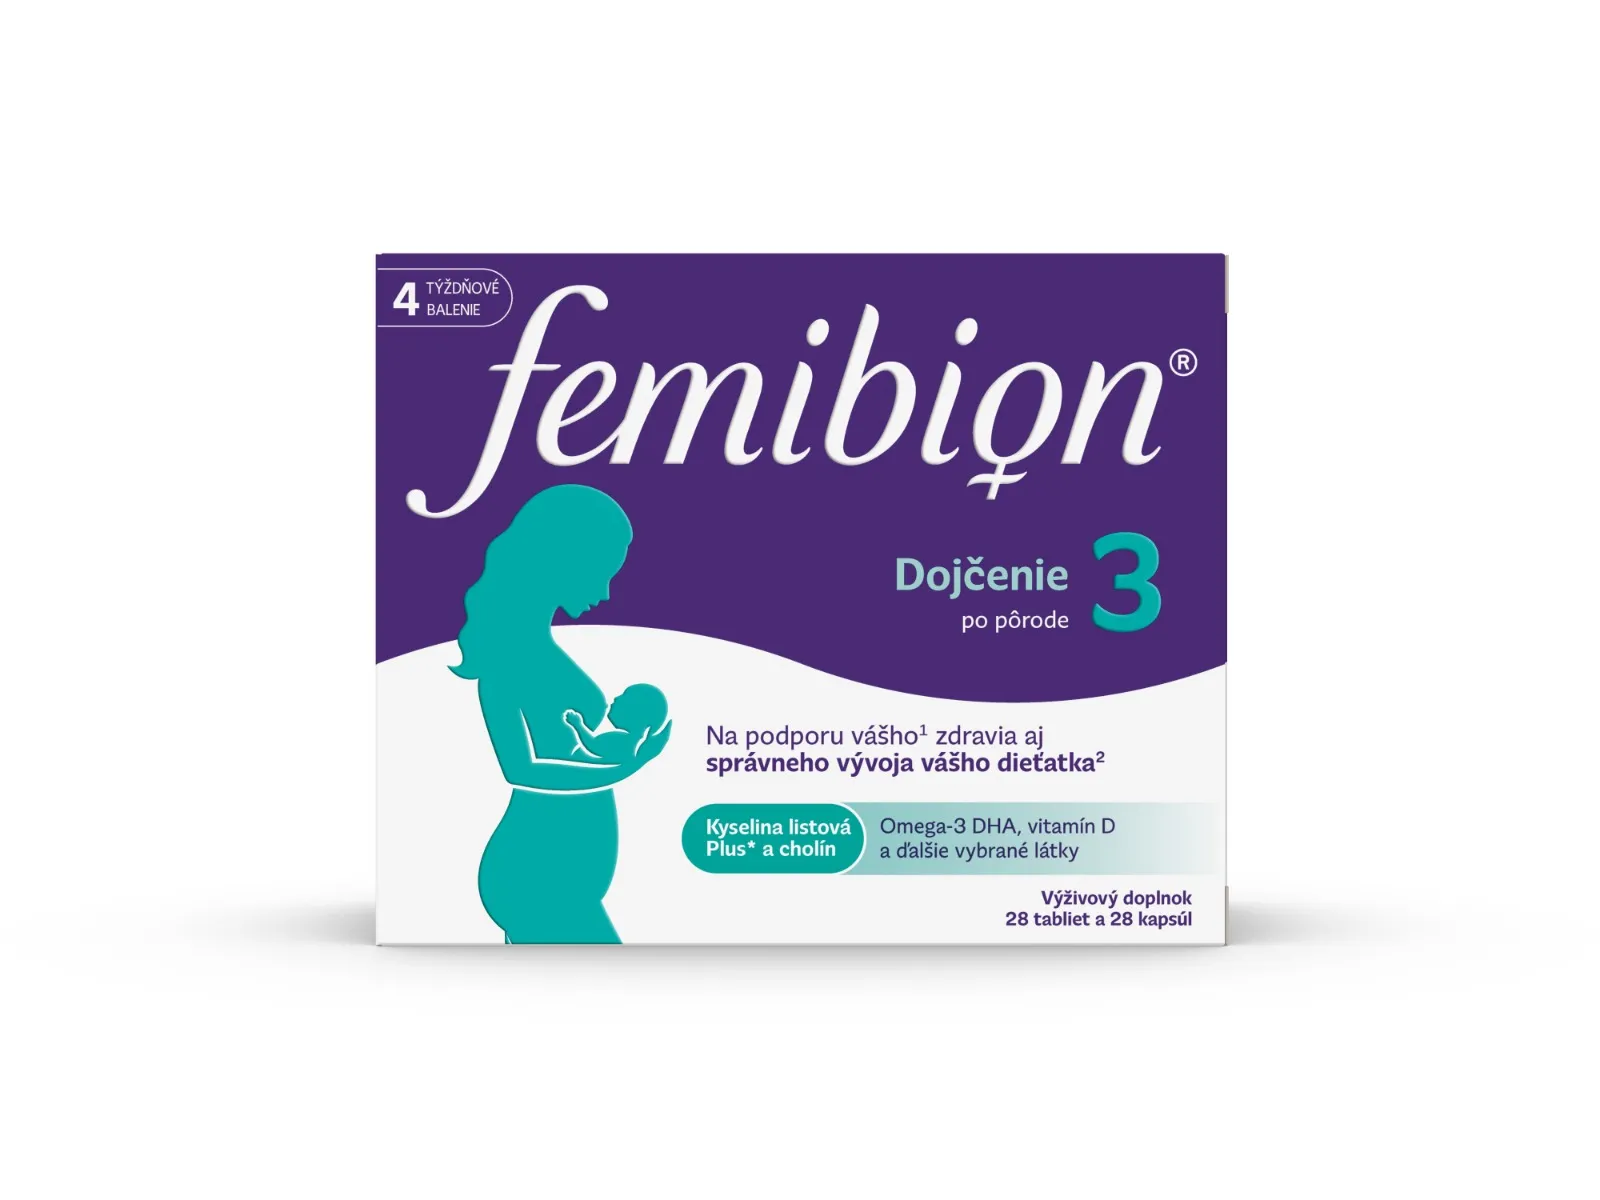 FEMIBION 3 Dojčenie, 28 tbl + 28 cps 1×28 tbl + 28 cps, výživový doplnok